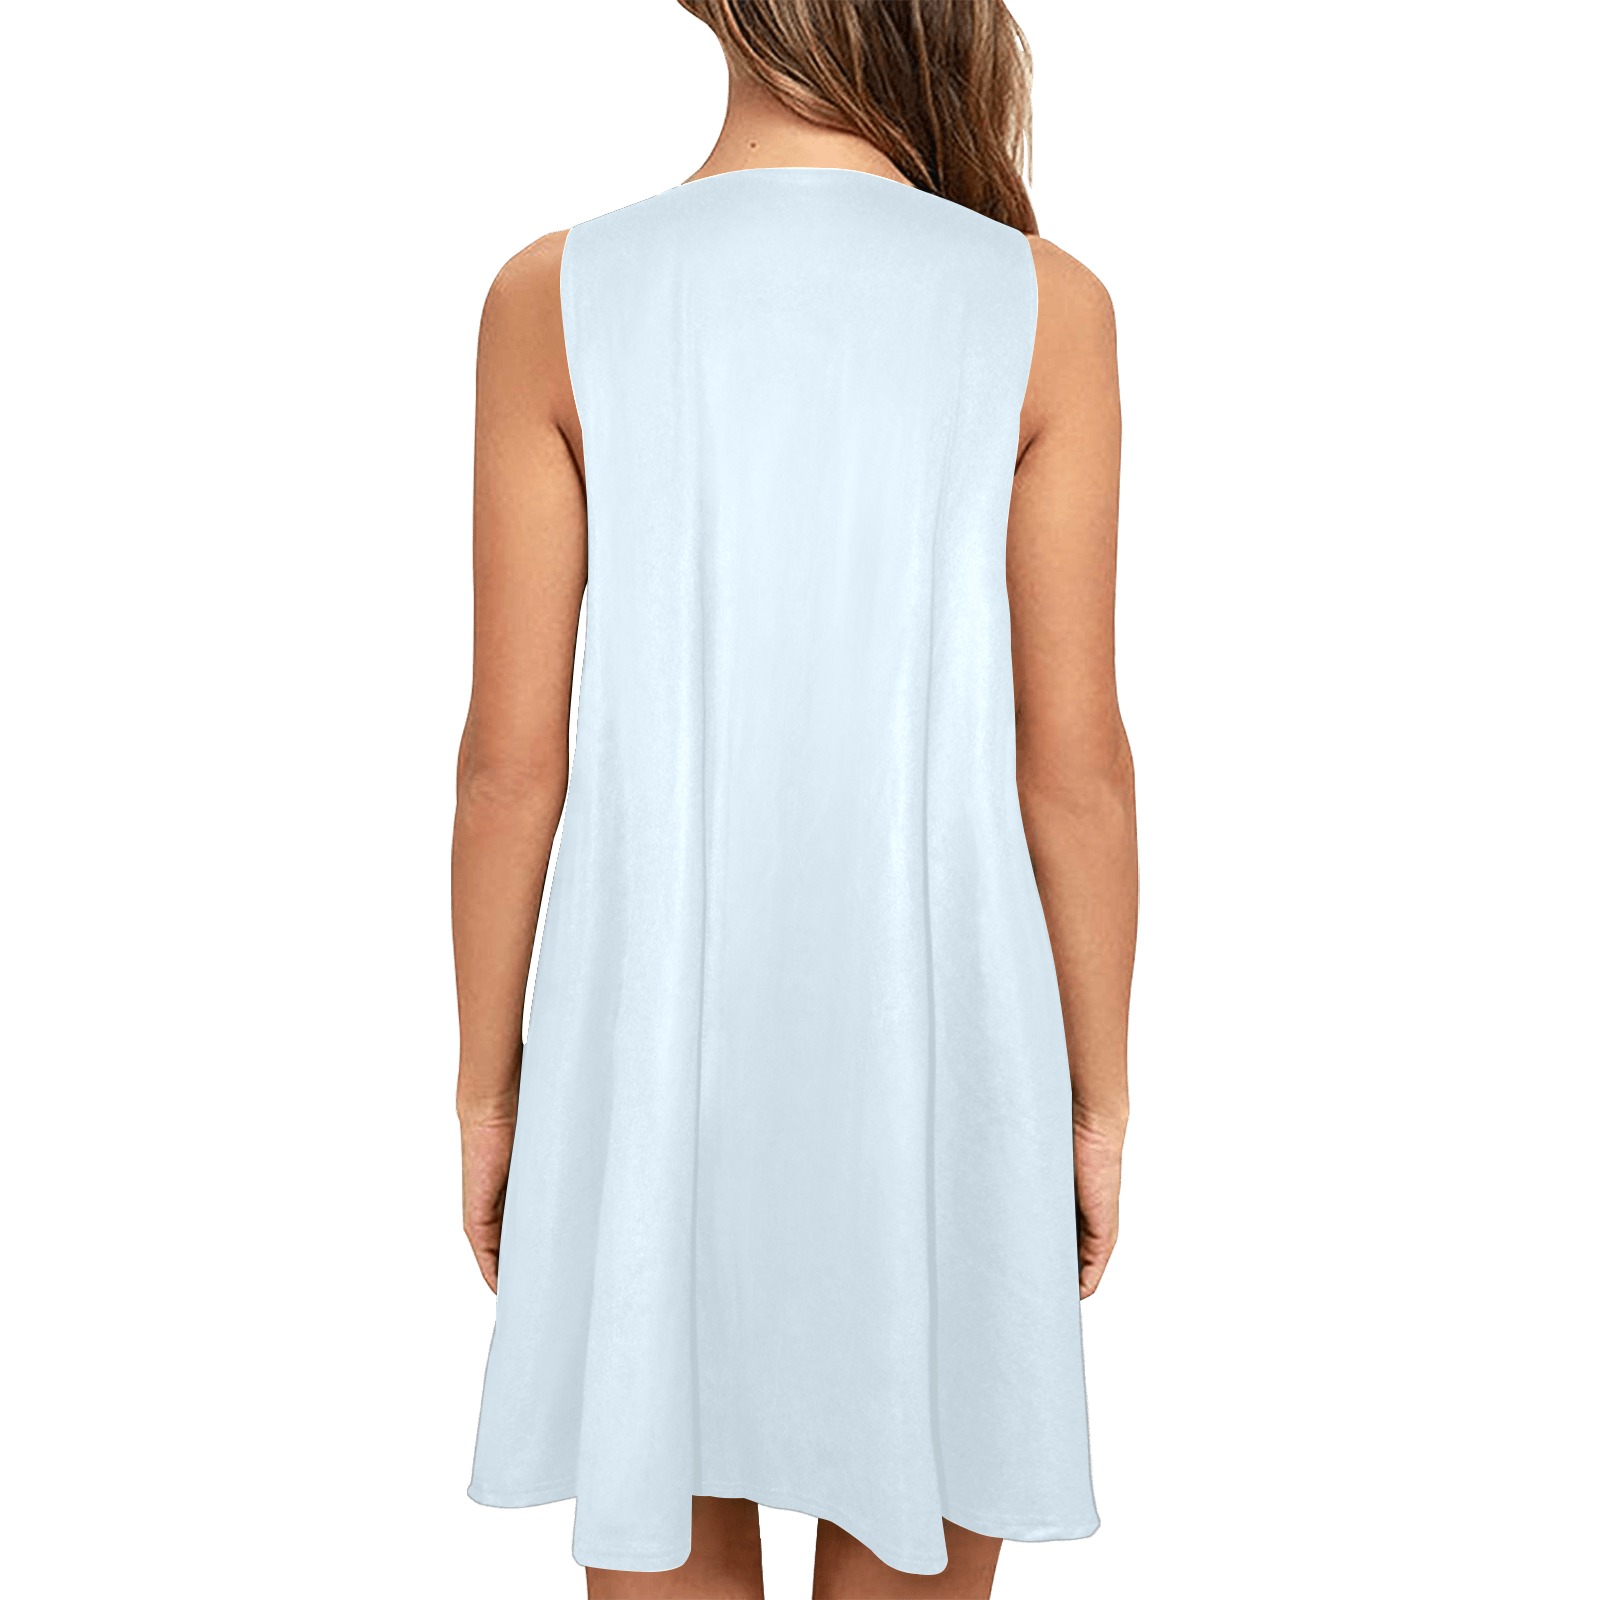 Patchwork Heart Teddy Light Blue Sleeveless A-Line Pocket Dress (Model D57)